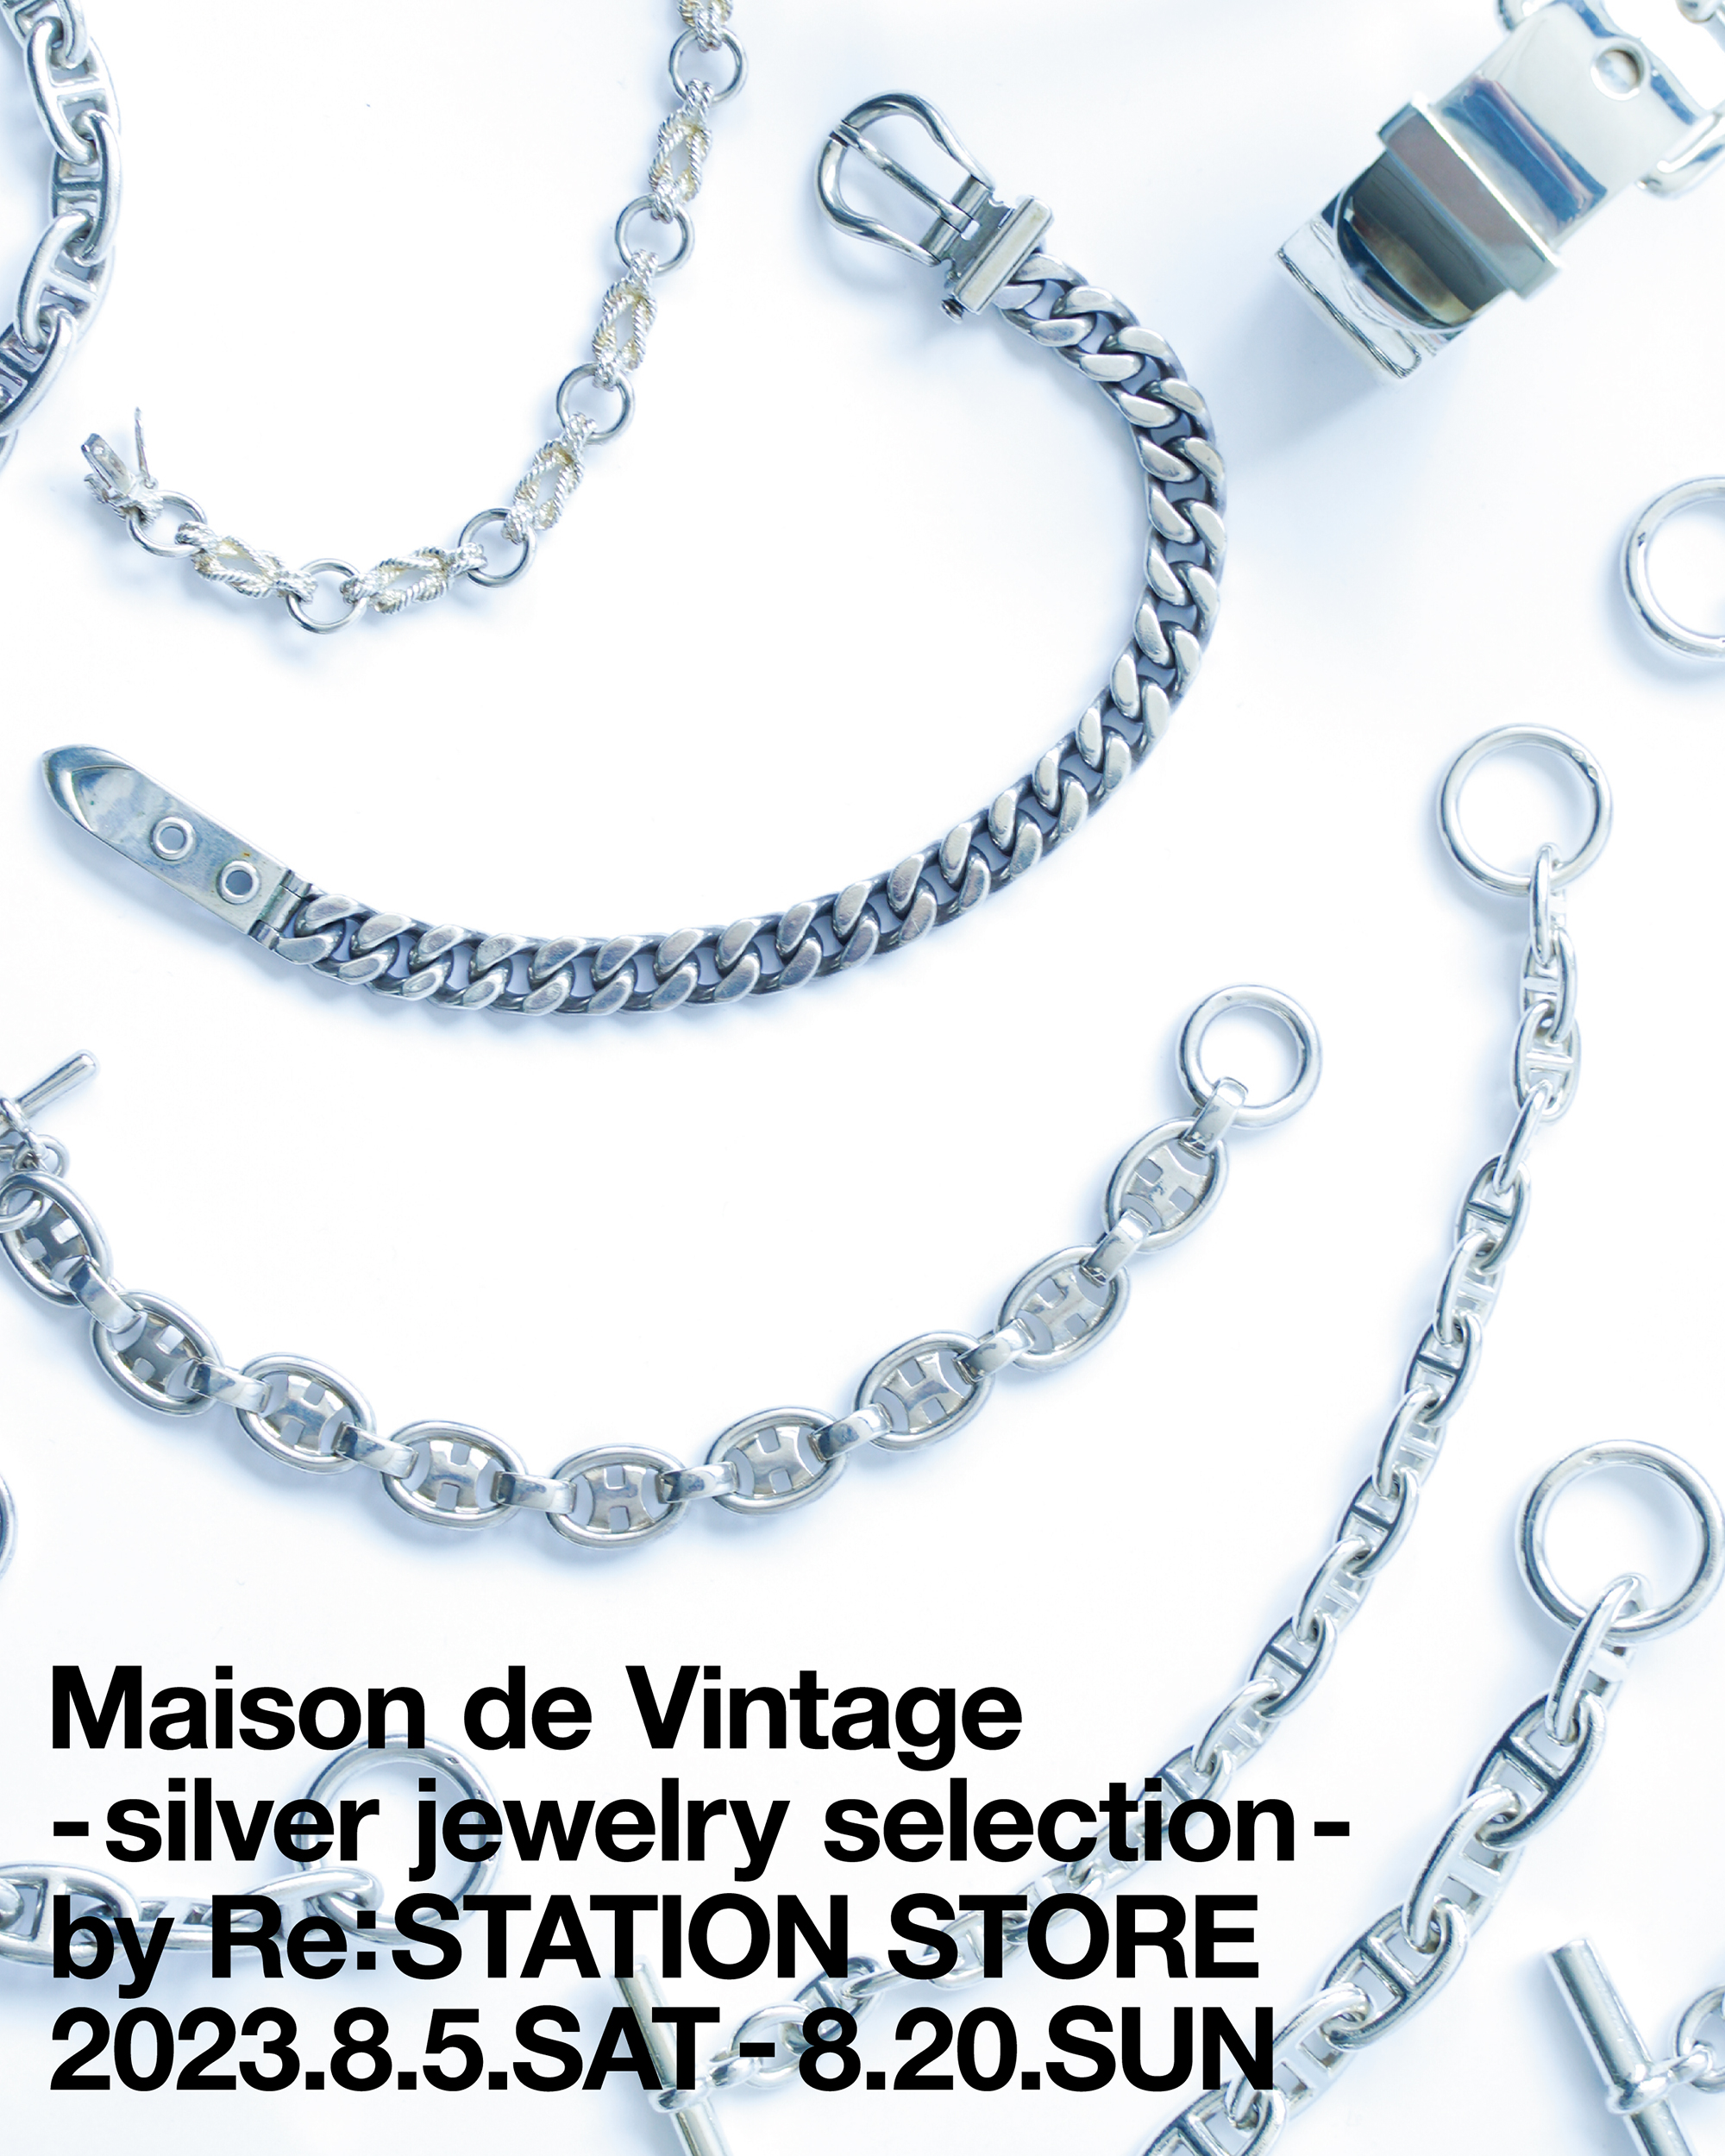 Maison de Vintage -silver jewelry selection